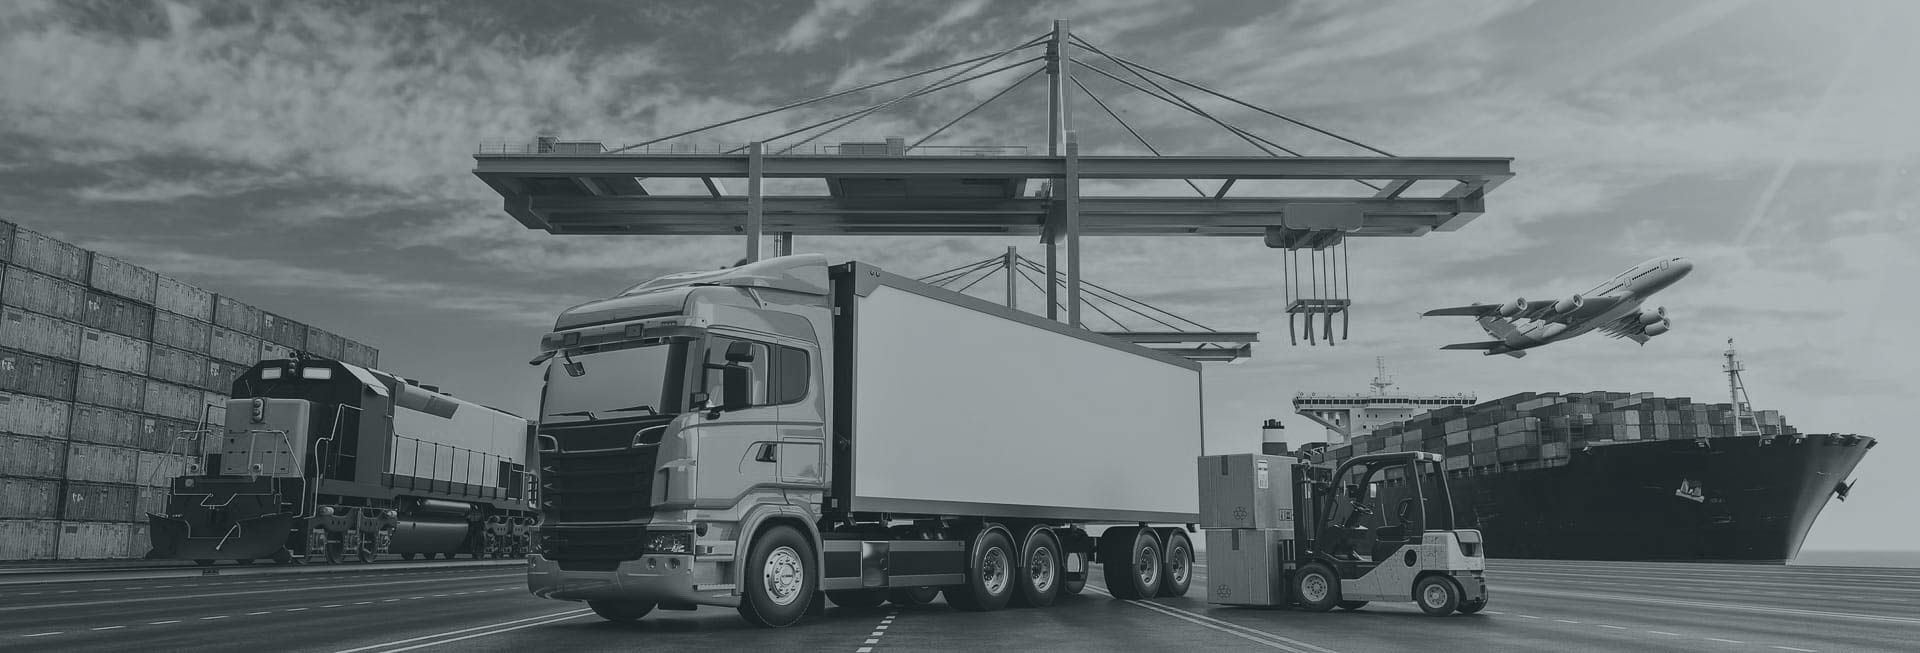 Logistik & Transport | KPM